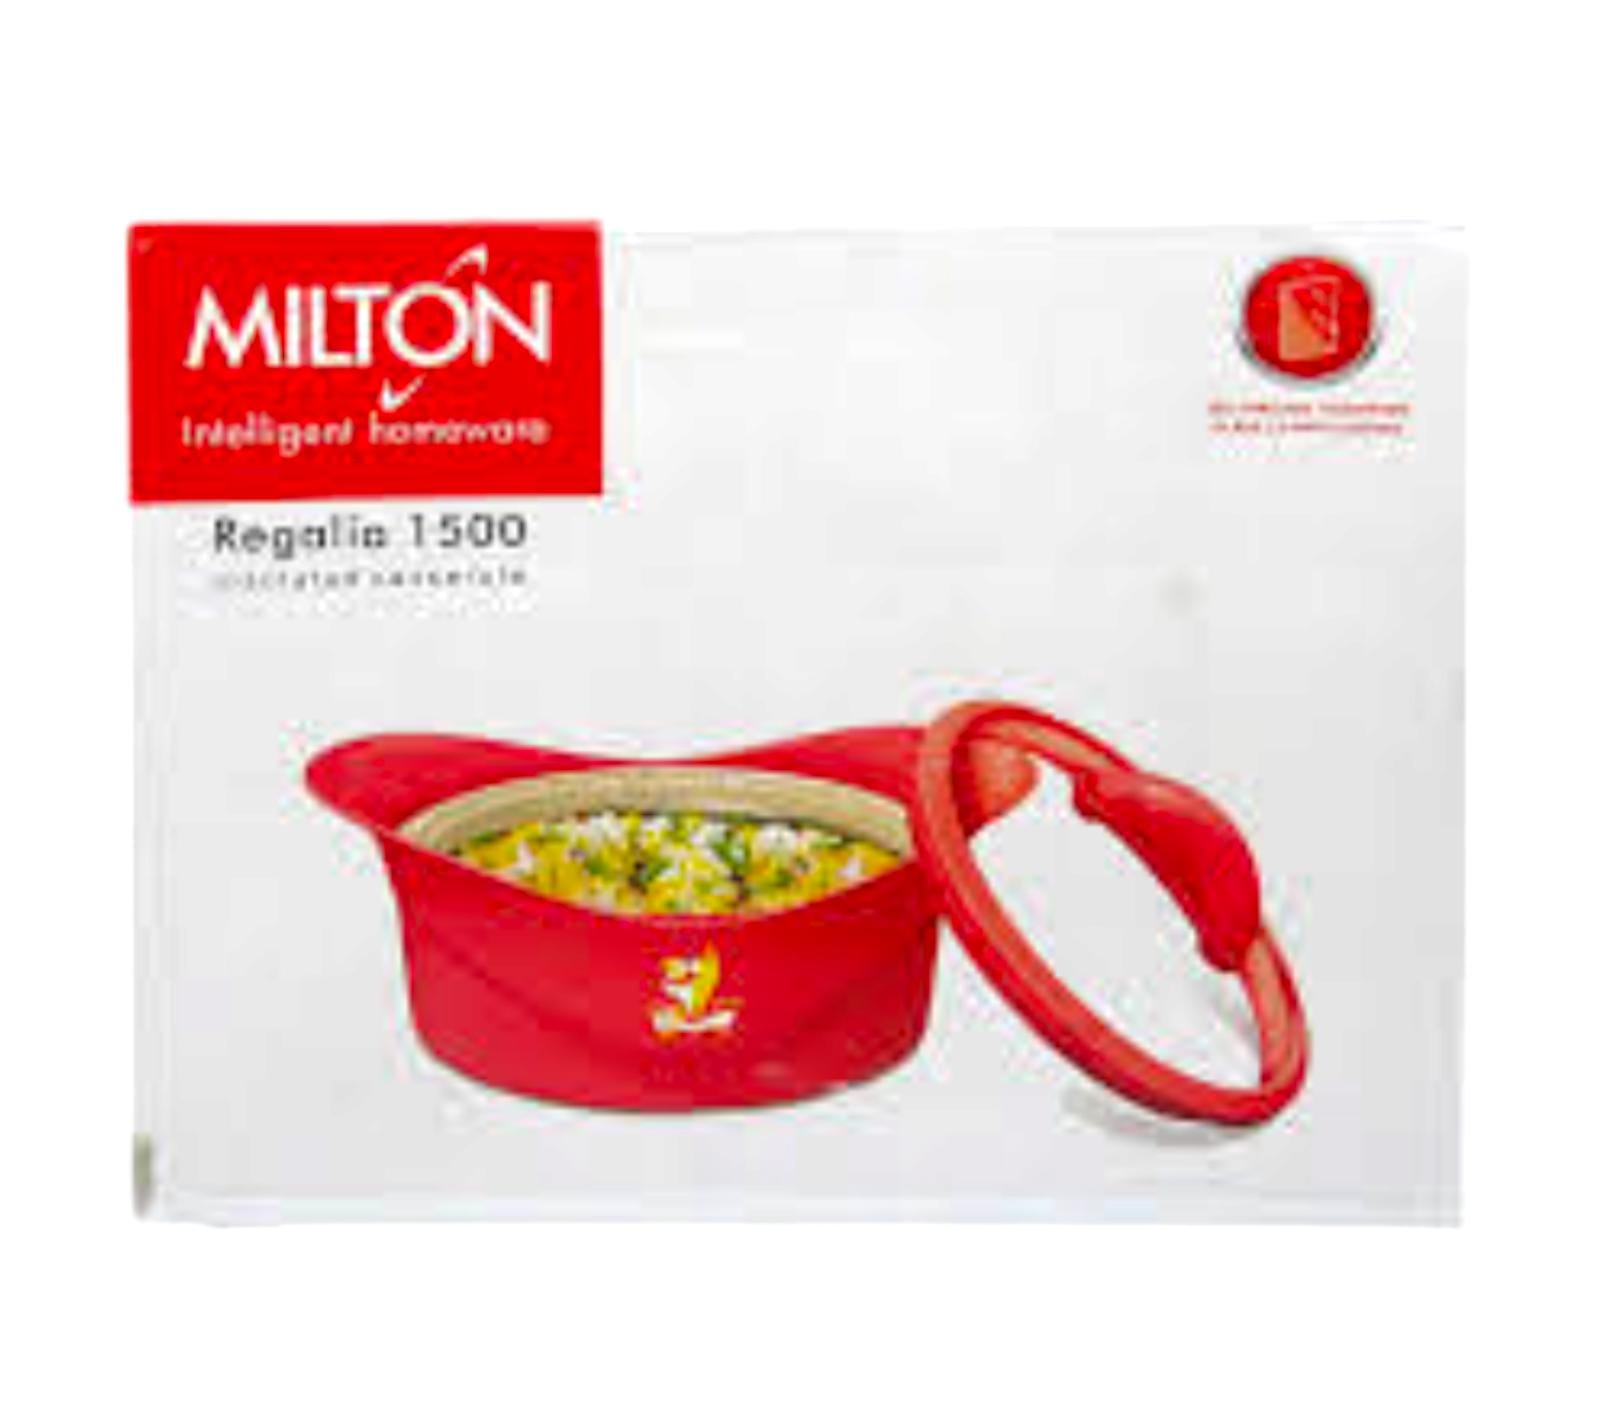 Milton Box